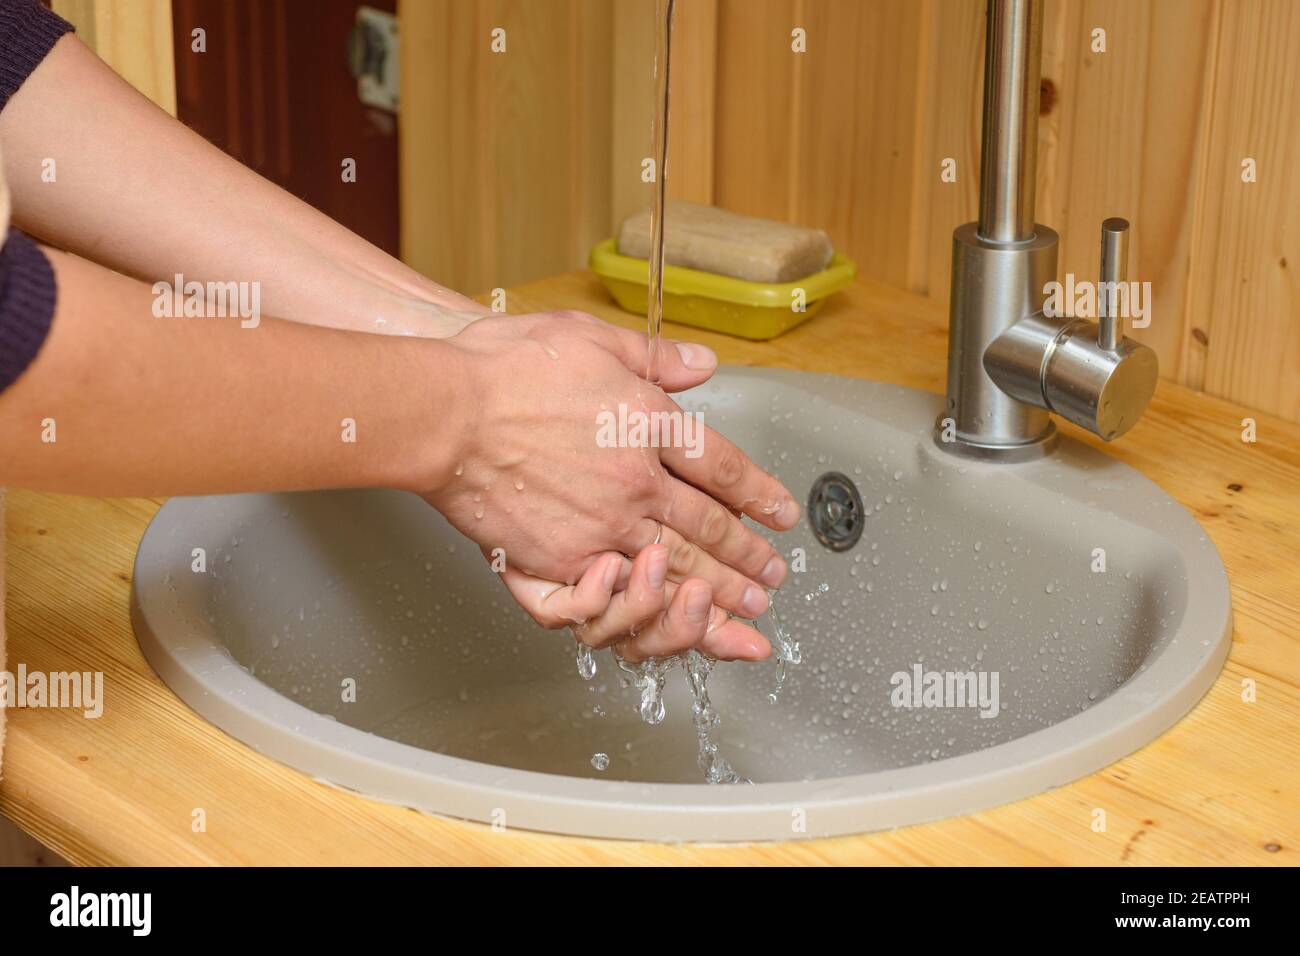 Das Mädchen wäscht ihre Hände unter fließendem Wasser in der Waschbecken Stockfoto